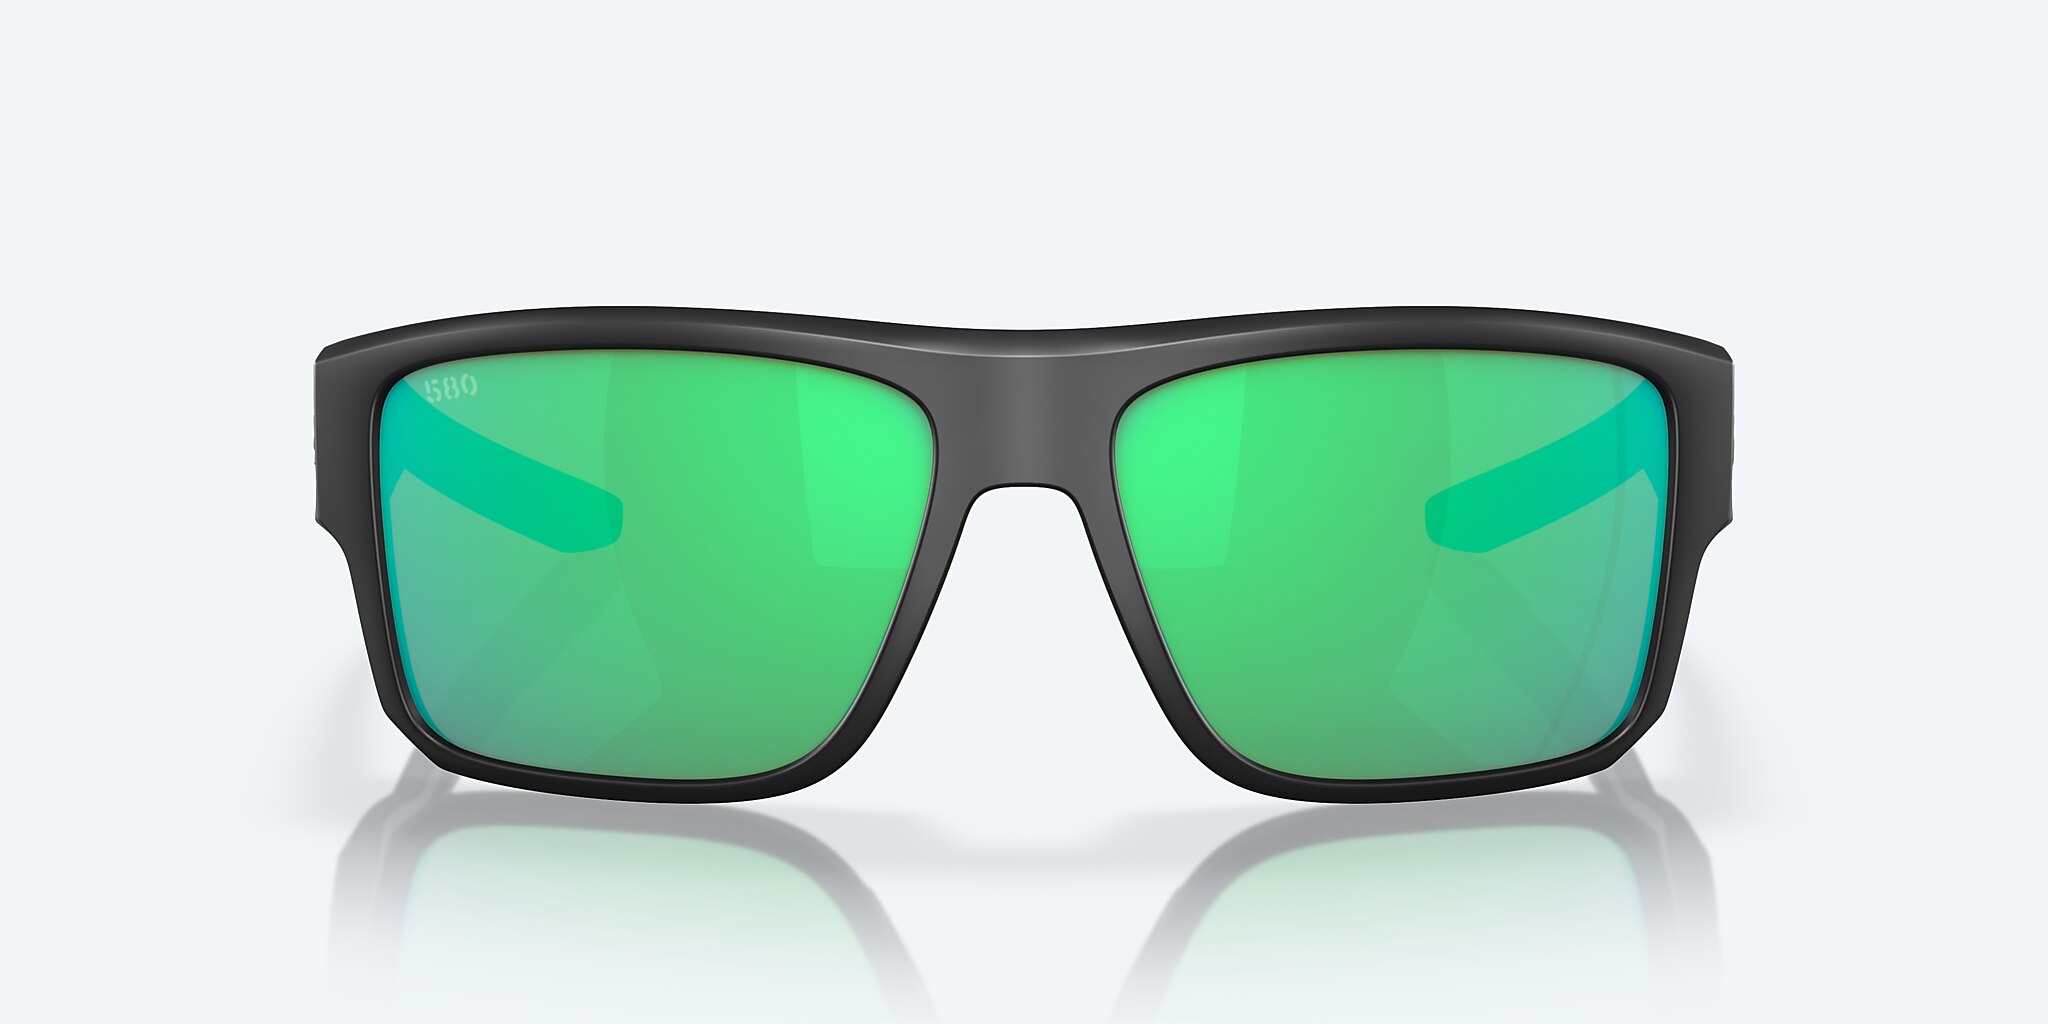 Costa 6S9116 Taxman Matte Black - Men Sunglasses, Green Mirror Lens